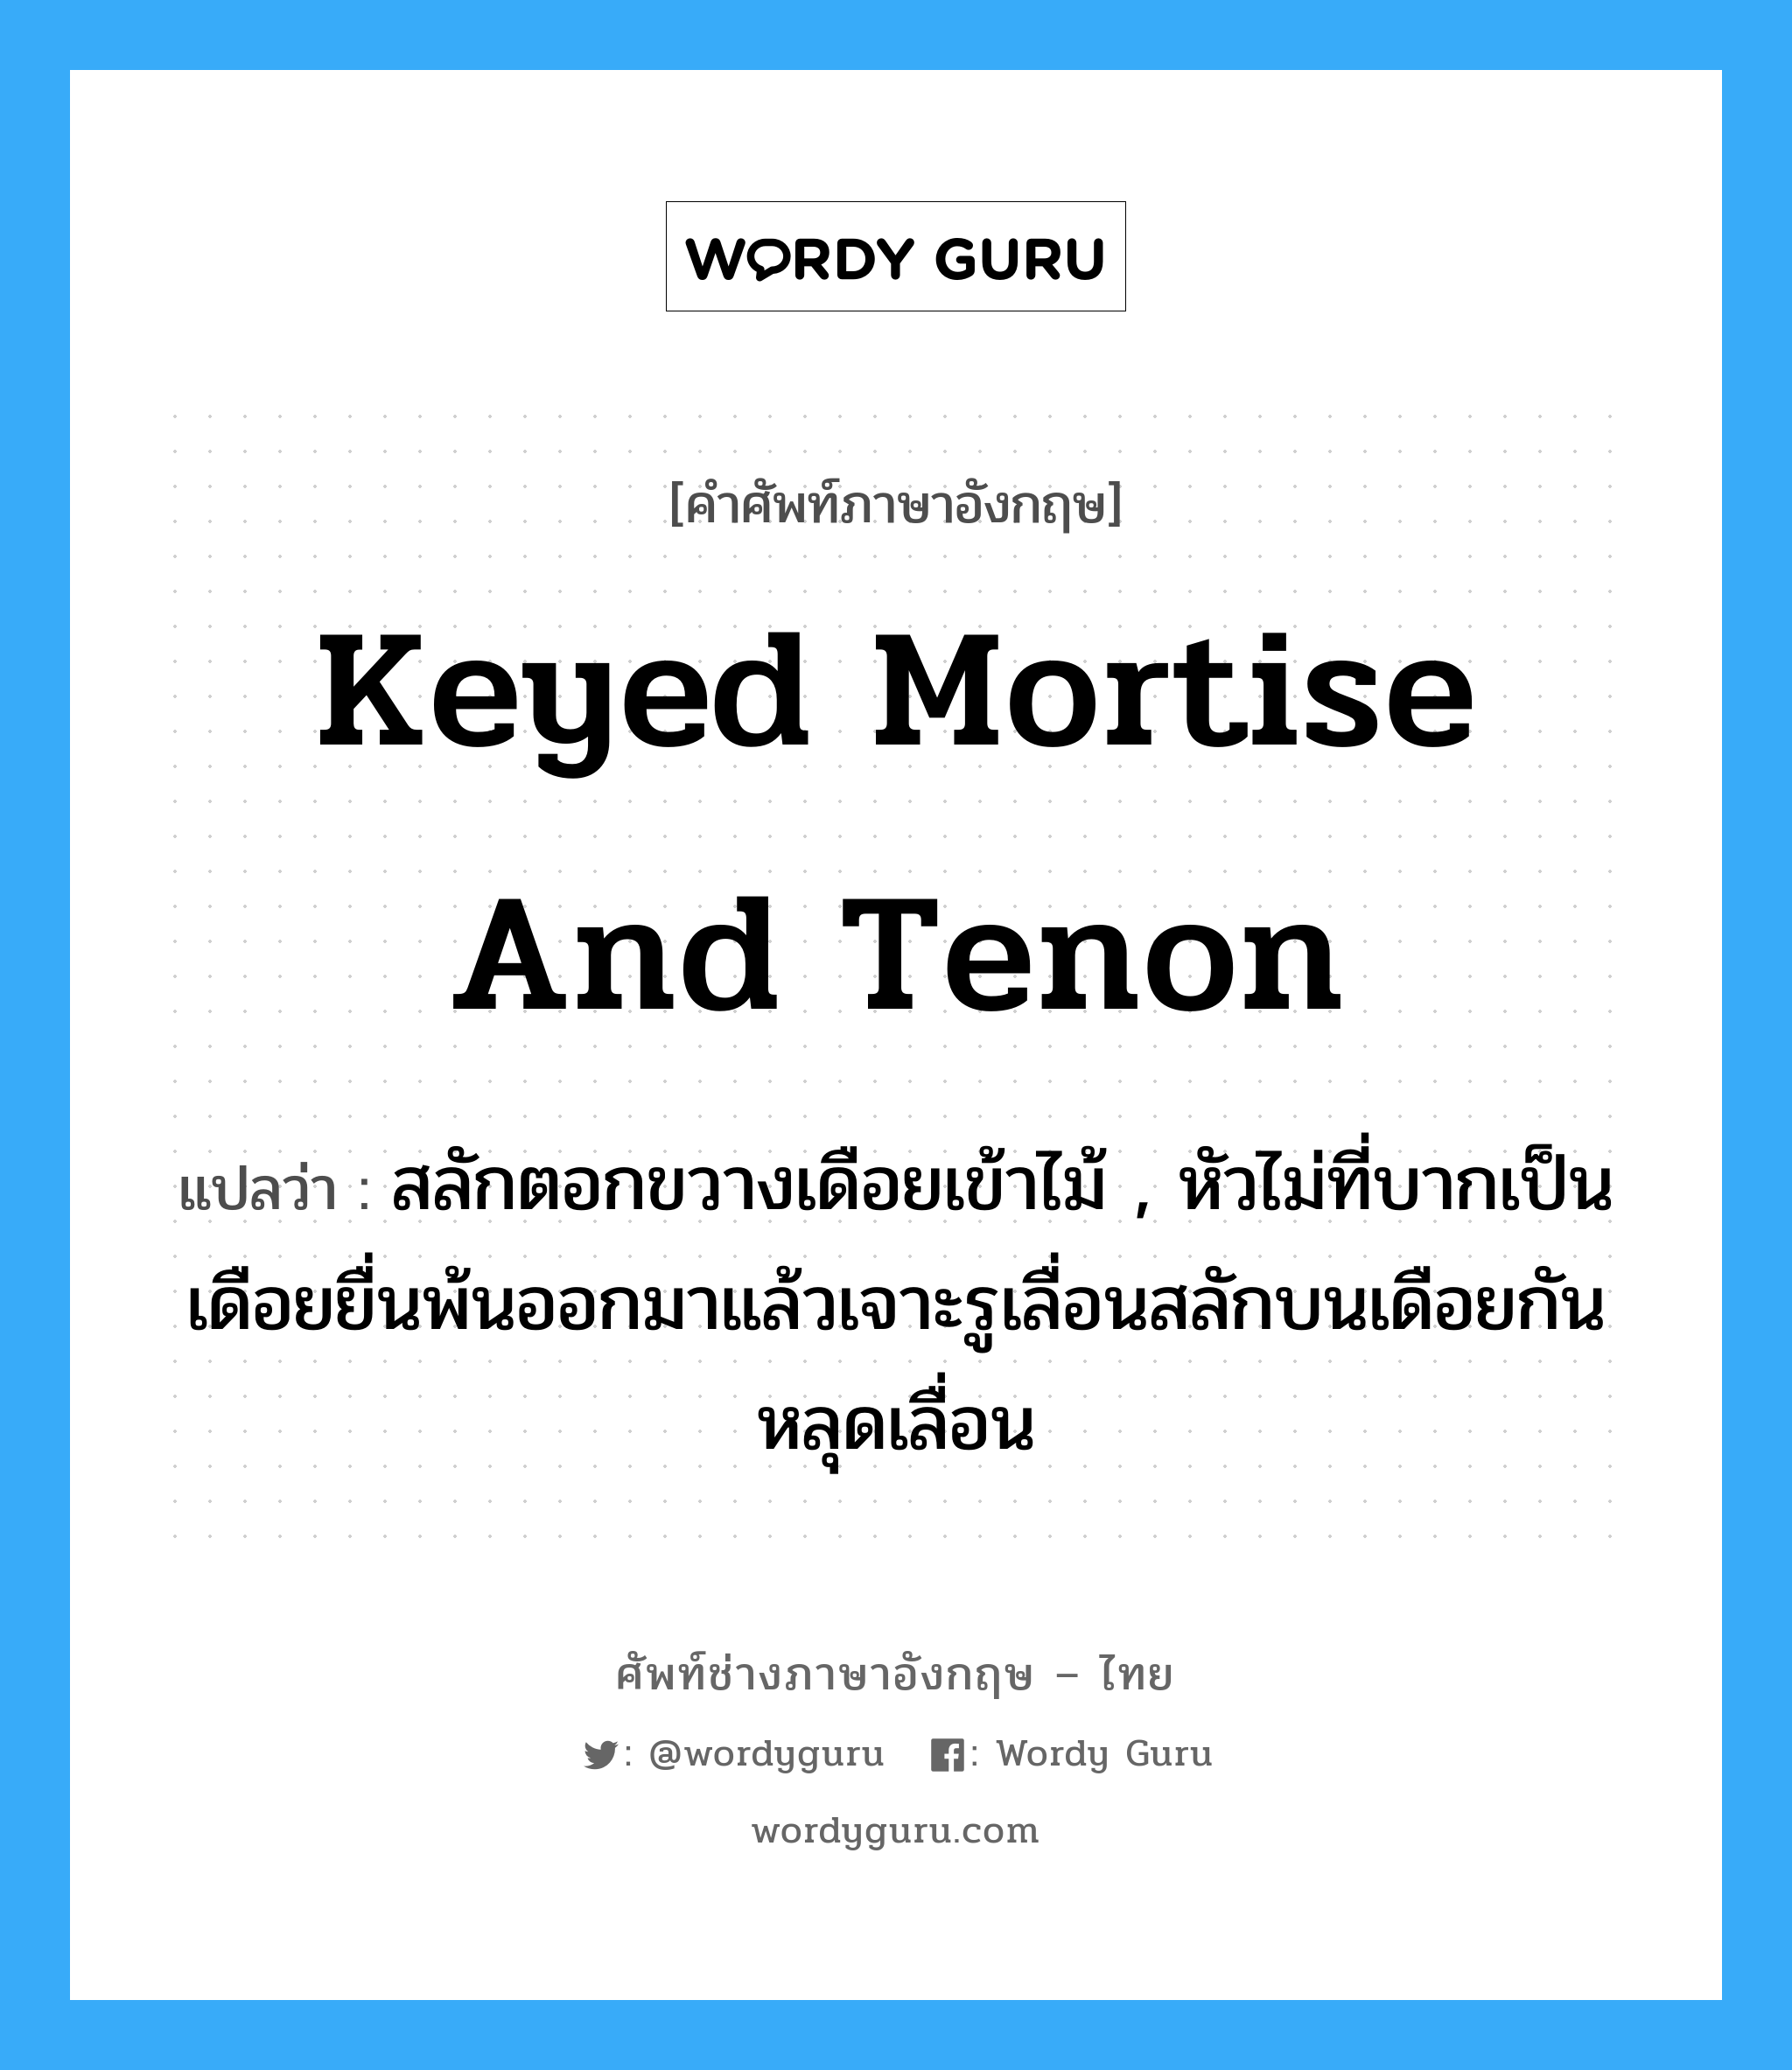 keyed mortise and tenon แปลว่า?, คำศัพท์ช่างภาษาอังกฤษ - ไทย keyed mortise and tenon คำศัพท์ภาษาอังกฤษ keyed mortise and tenon แปลว่า สลักตอกขวางเดือยเข้าไม้ , หัวไม่ที่บากเป็นเดือยยื่นพ้นออกมาแล้วเจาะรูเลื่อนสลักบนเดือยกันหลุดเลื่อน